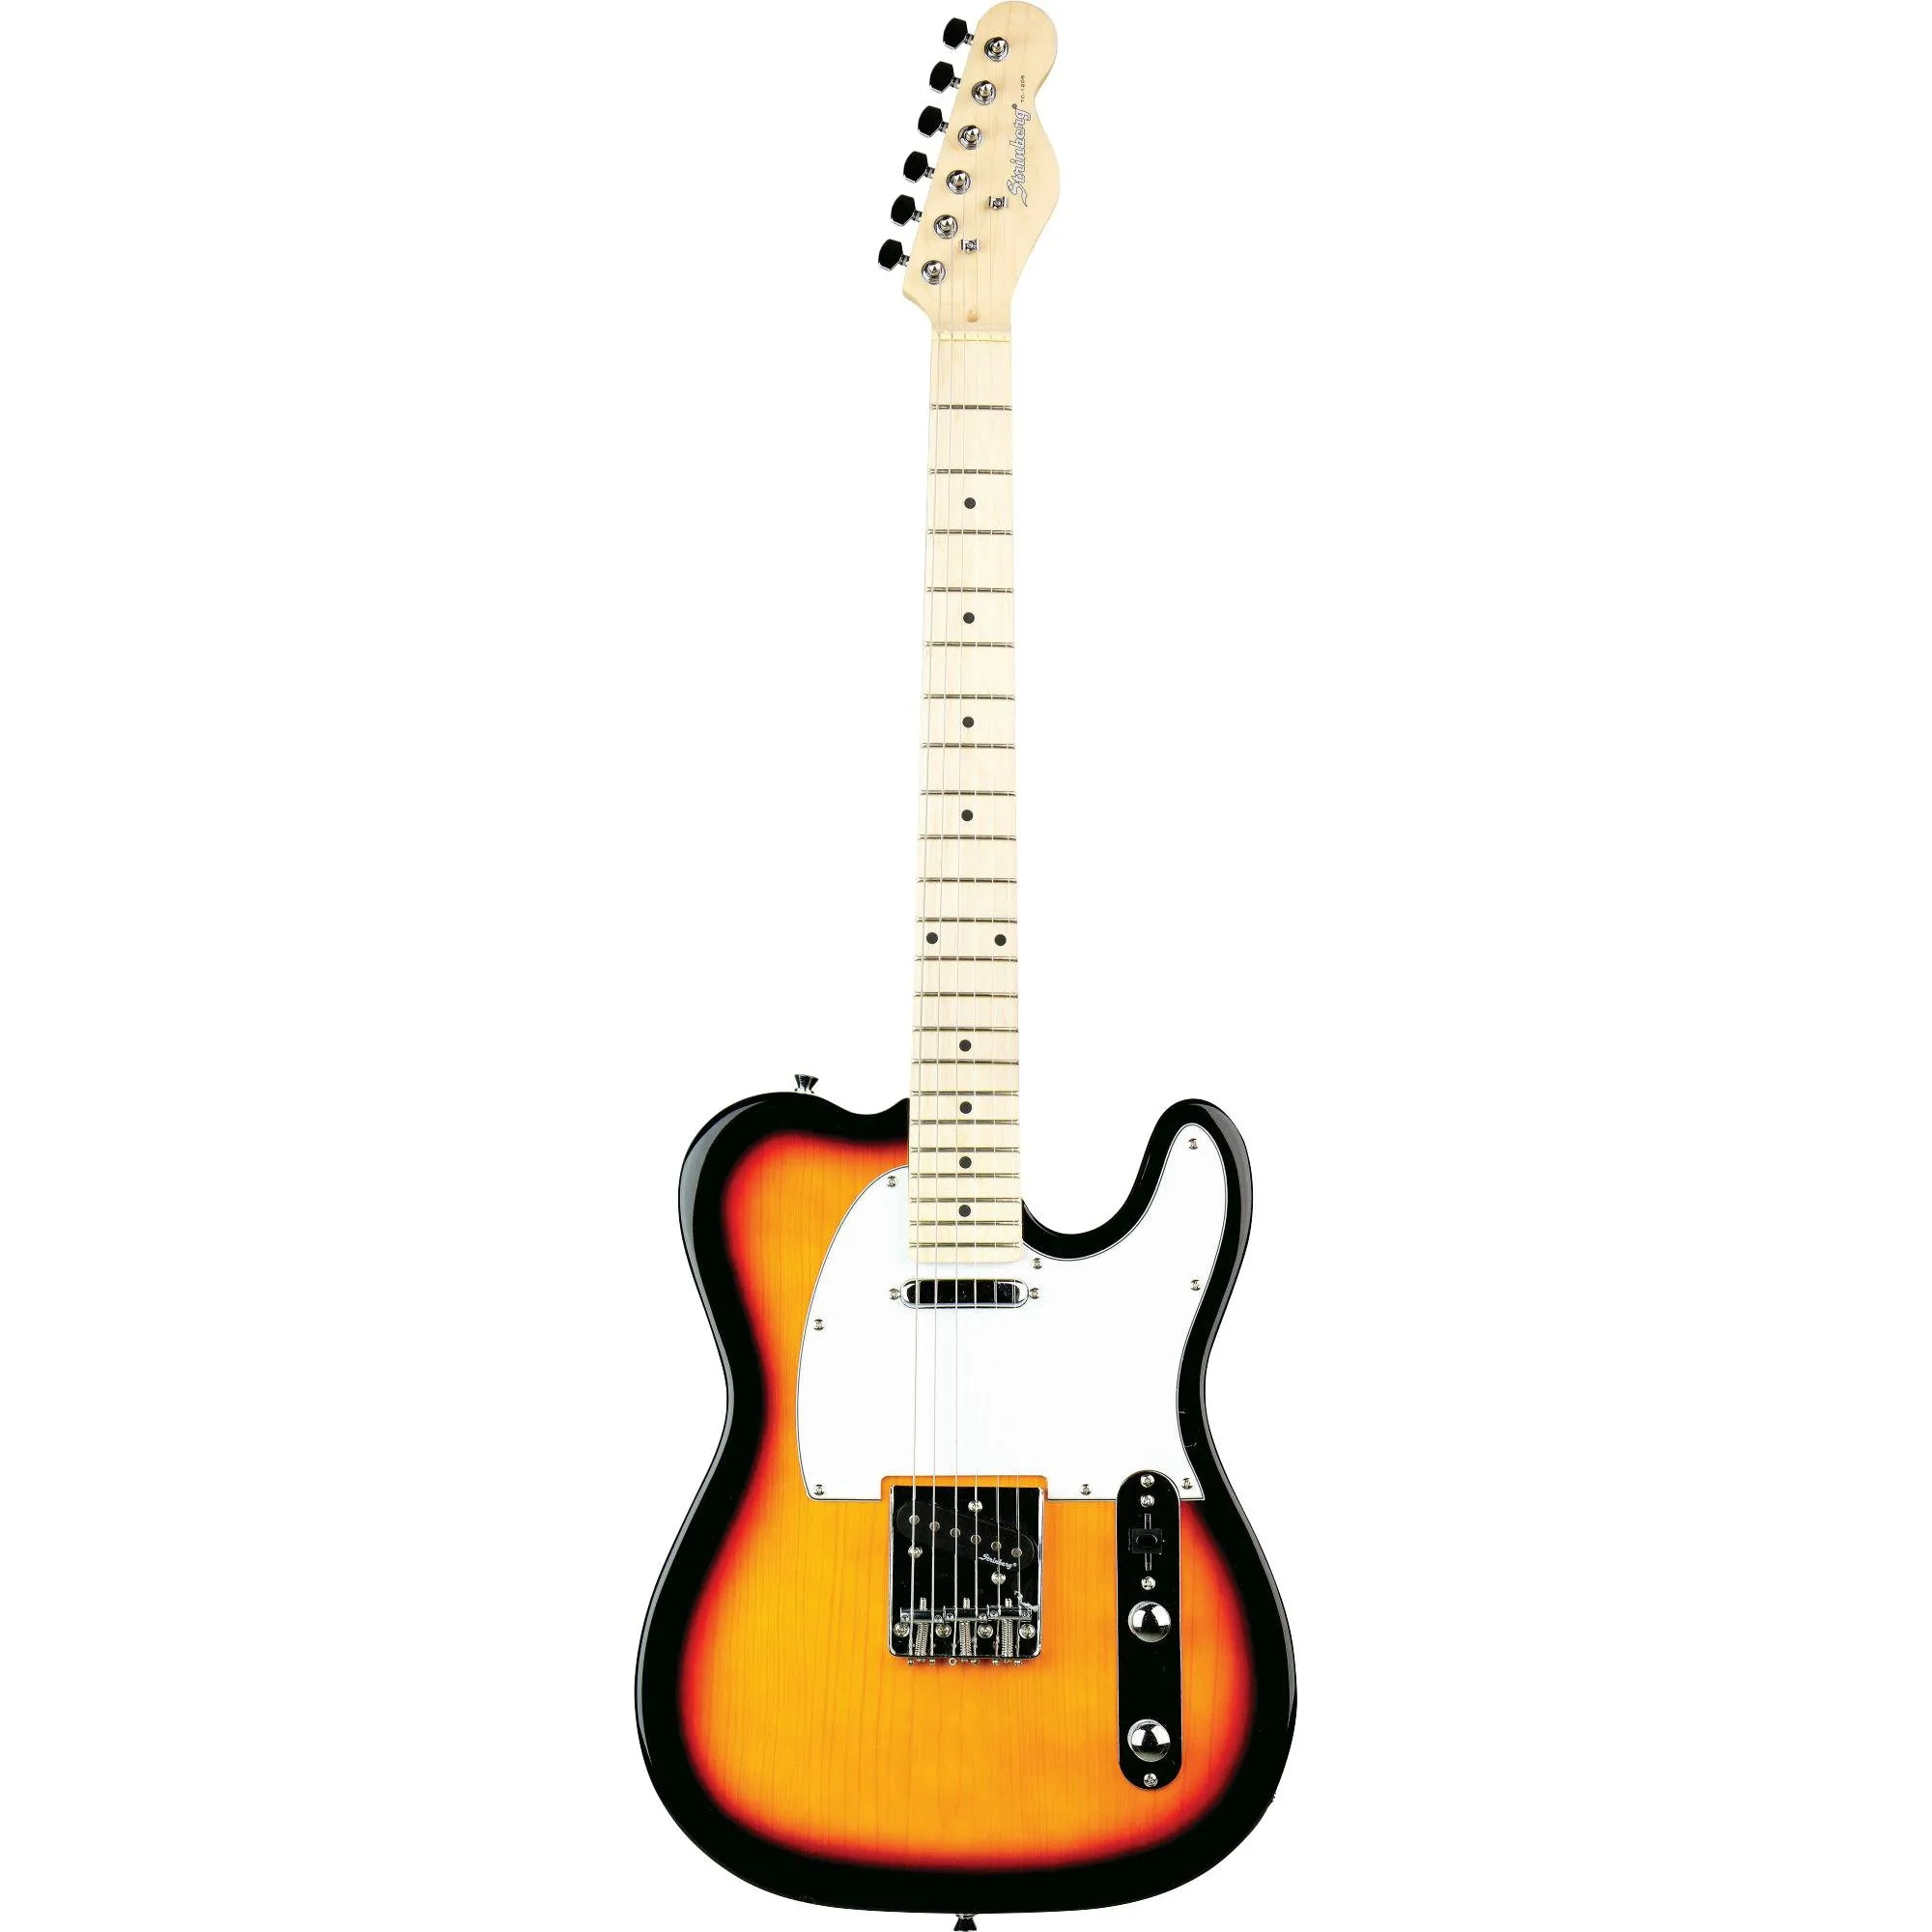 Guitarra Tele Strinberg TC120S Sunburst por 913,99 à vista no boleto/pix ou parcele em até 10x sem juros. Compre na loja Mundomax!